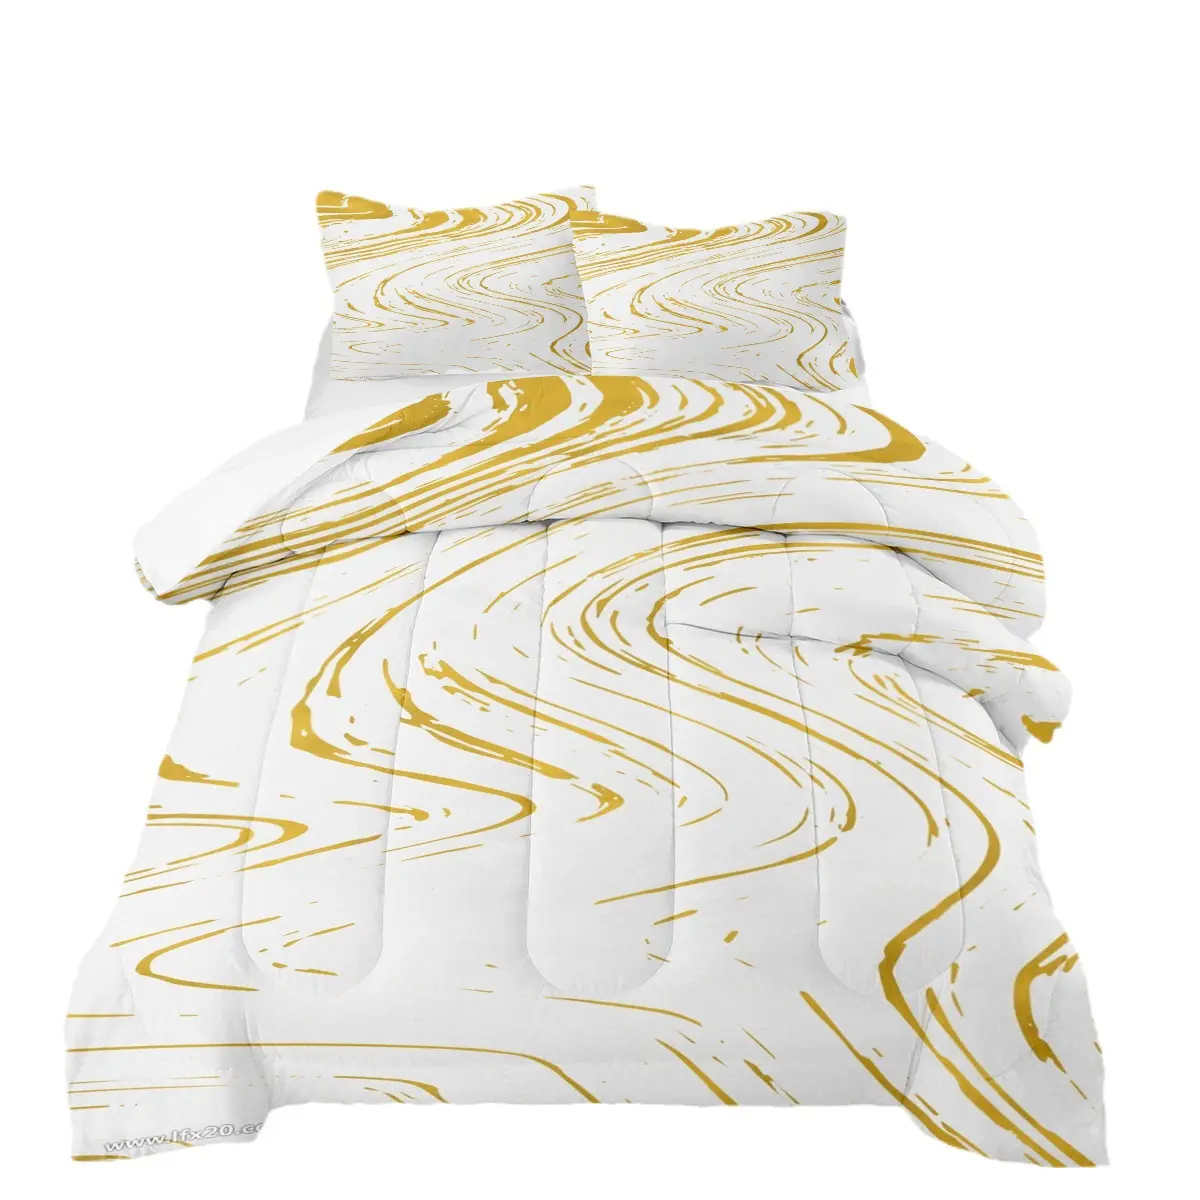 Edredón de ropa de cama de Amazon textil para el hogar, juego de tres piezas con edredón gordito de estilo minimalista de mármol estampado mate